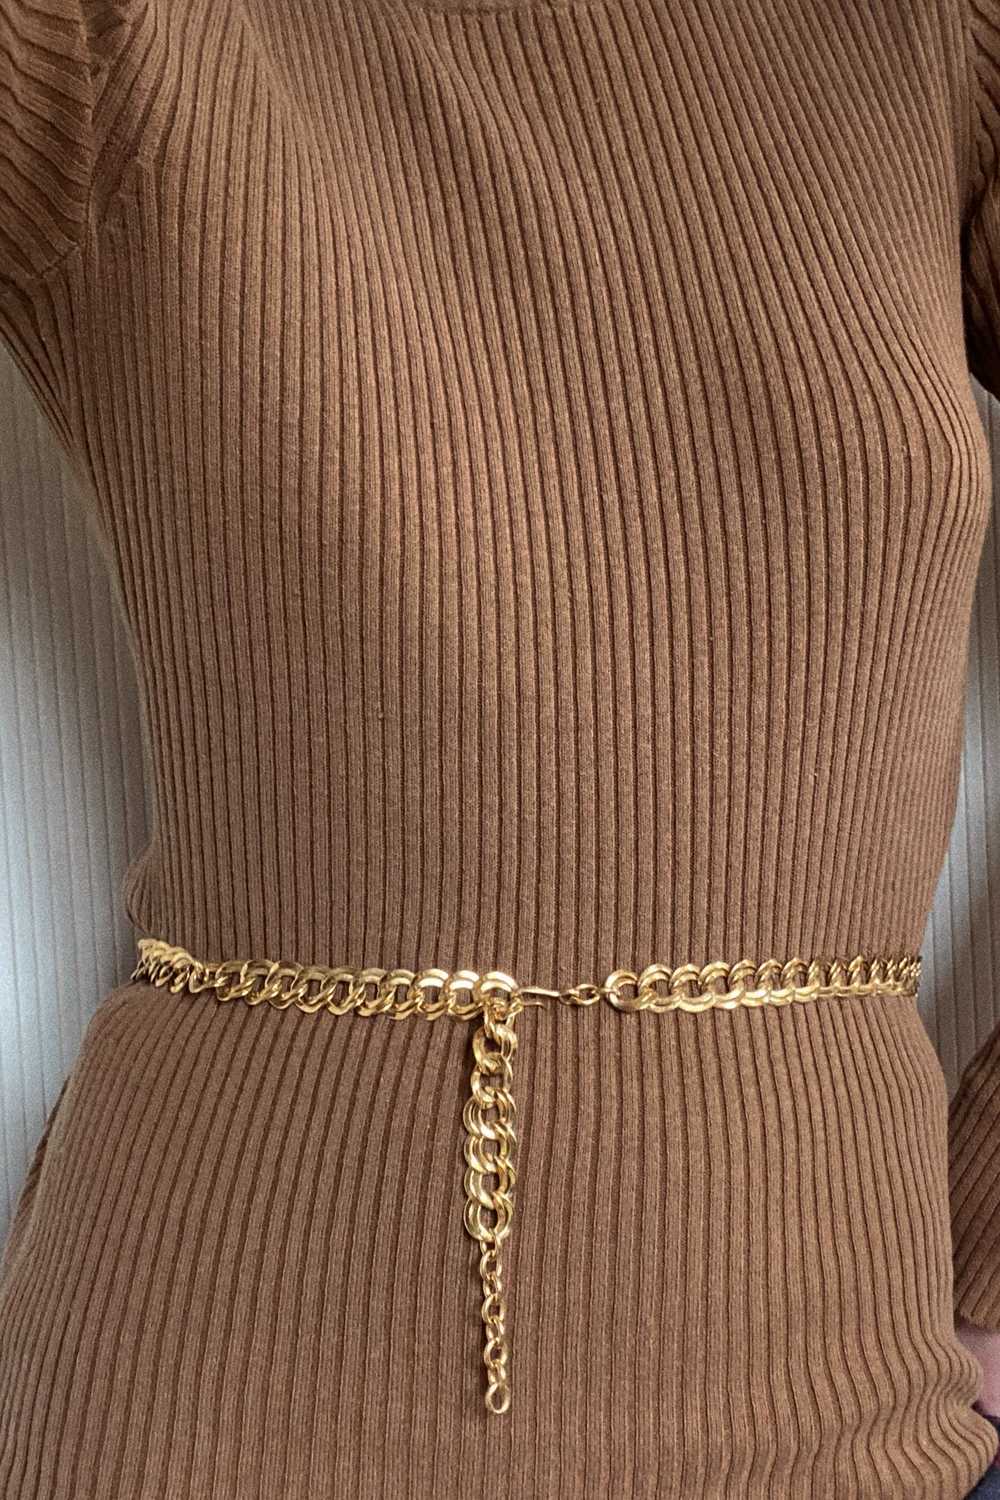 Monet Curb Chain Belt Necklace - image 2